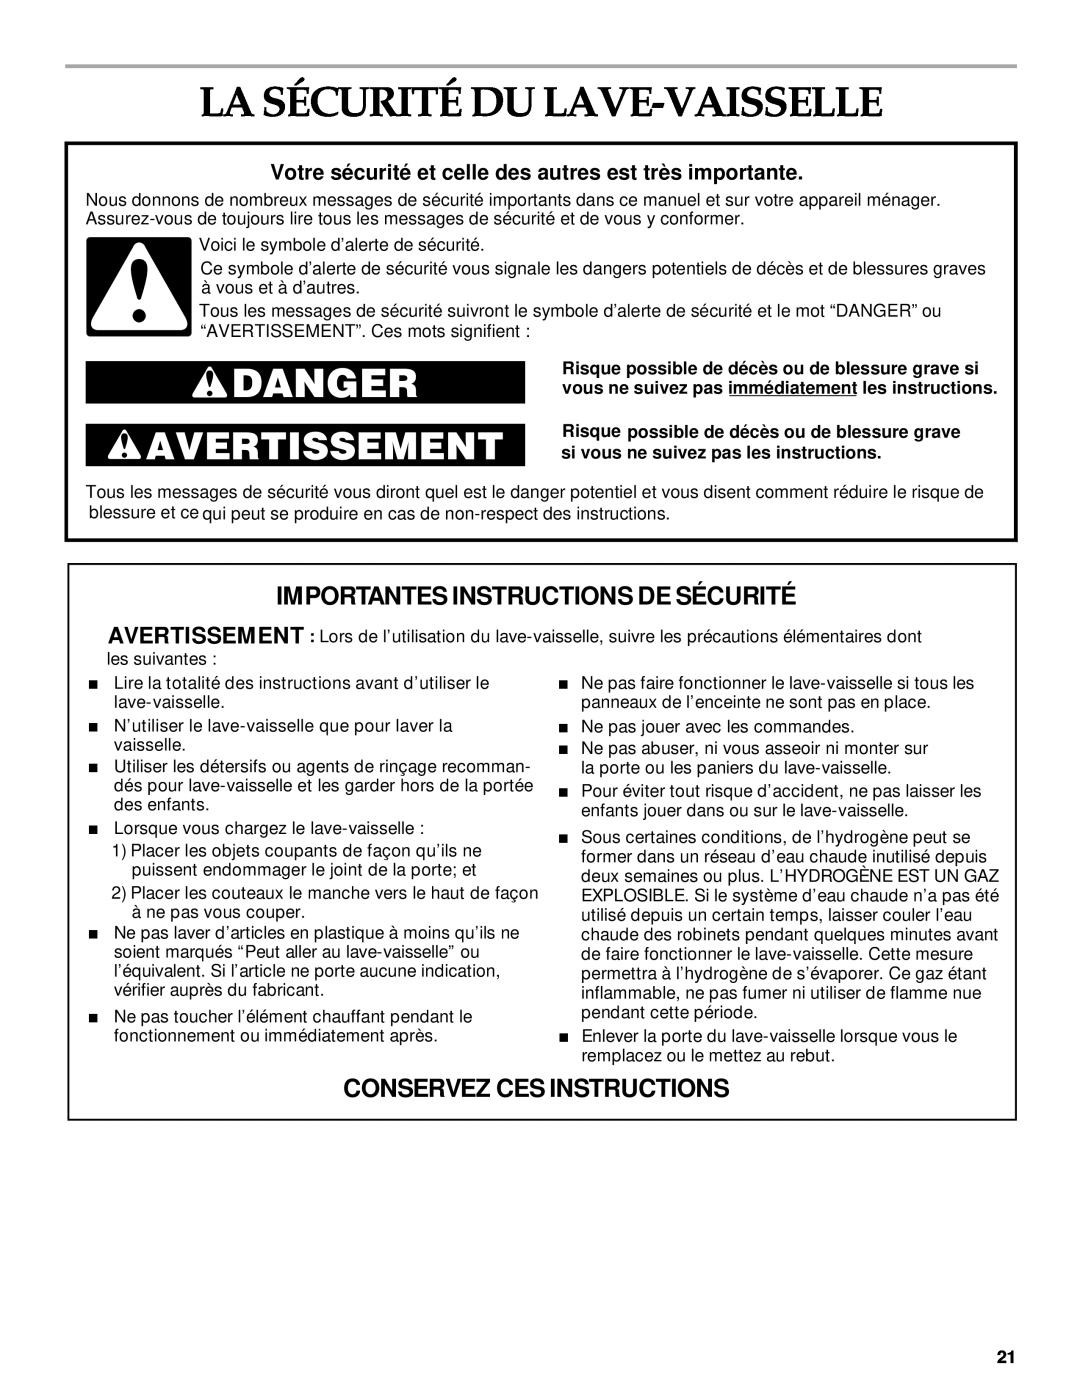 KitchenAid KUDP01TJ manual La Sécurité Du Lave-Vaisselle, Importantes Instructions De Sécurité, Conservez Ces Instructions 